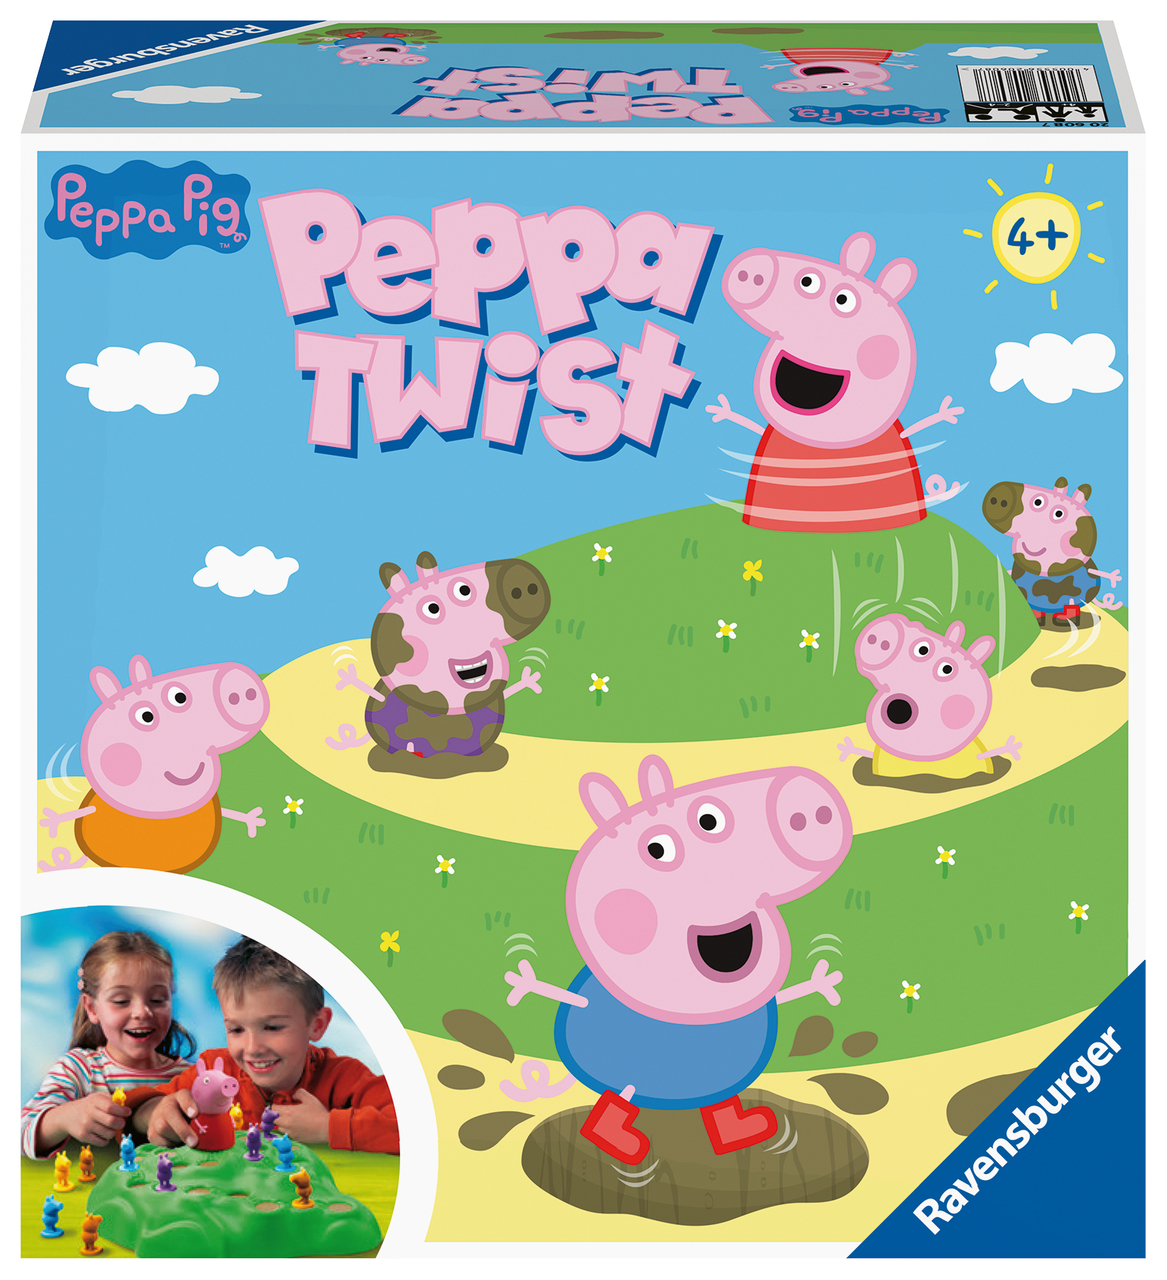 Ravensburger 20608 - Peppa Pig Lotti Karotti, Spiele-Klassiker mit den  Serienhelden aus Peppa Pig, für 2 bis 4 Kinder ab 4 Jahren | Schwäbischer  Albverein